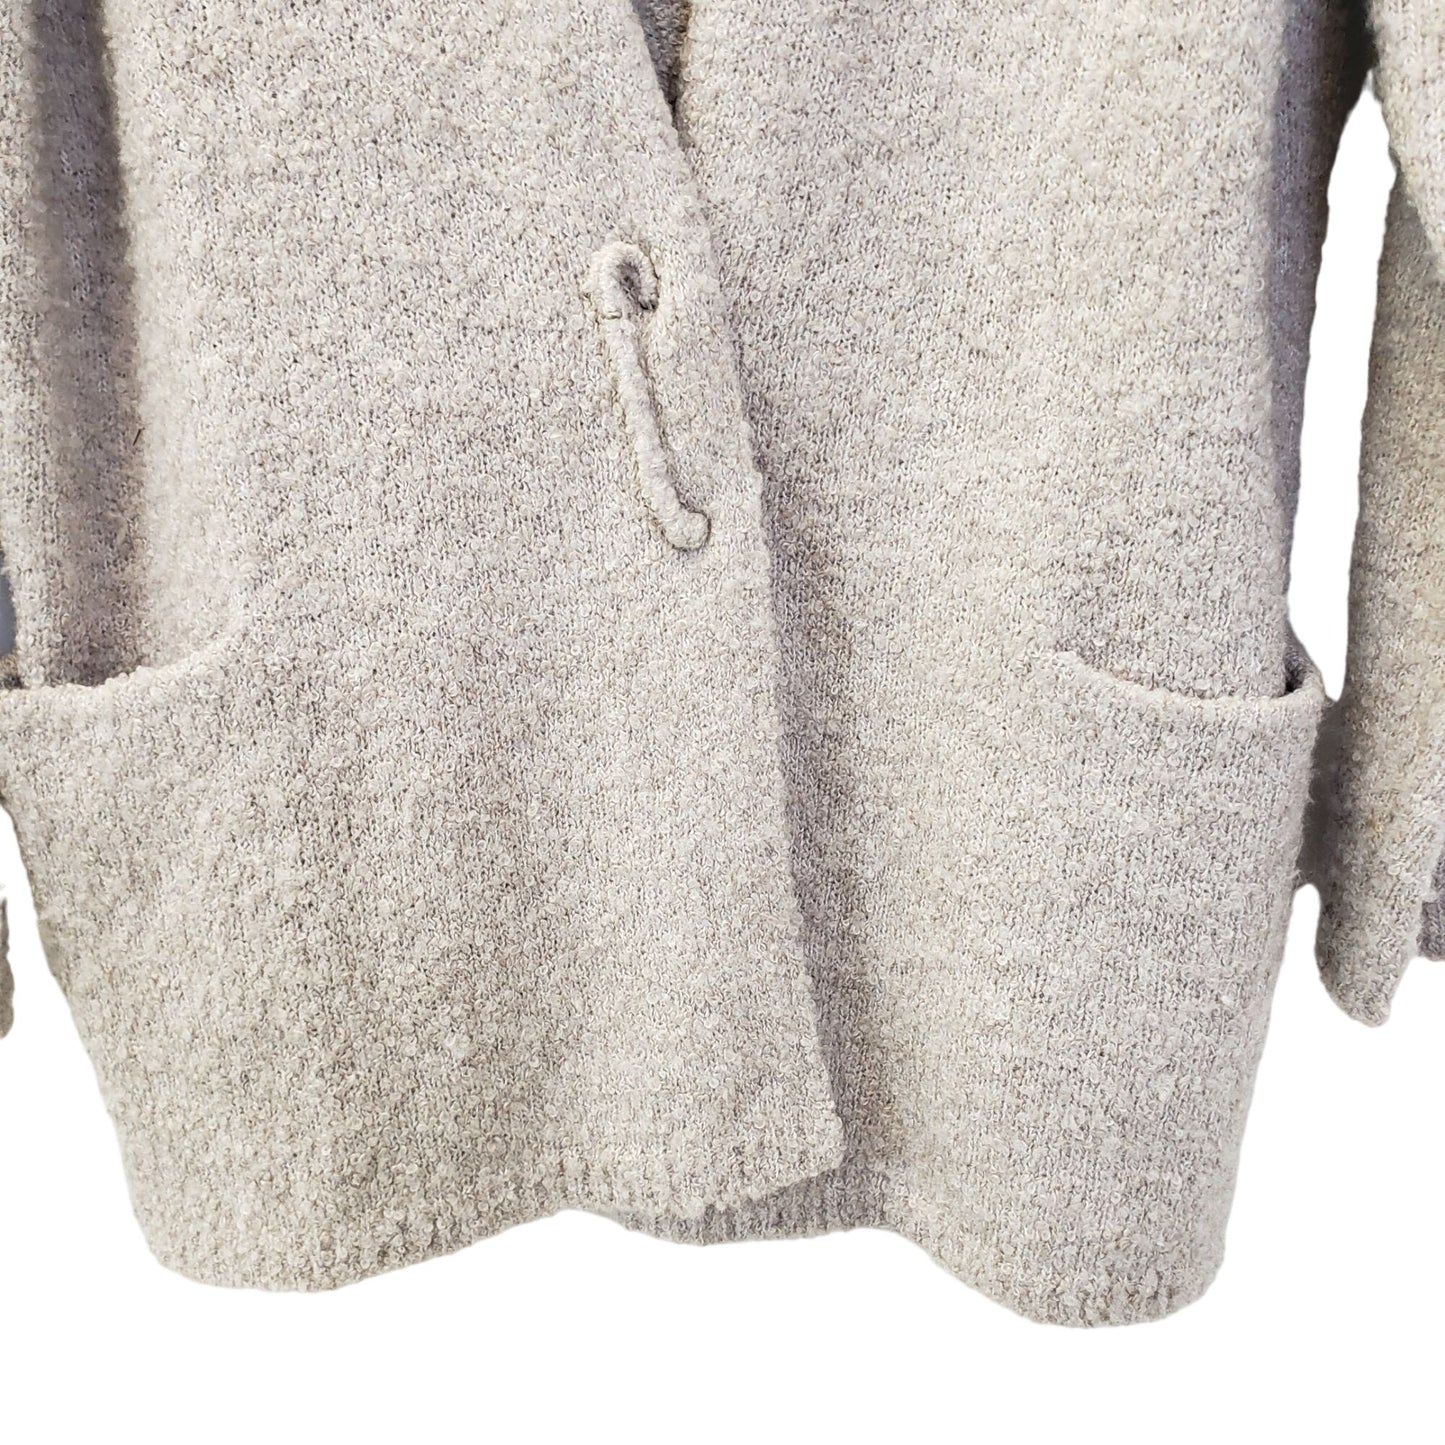 J. Jill Pure Jill Wool Blend Cardigan Sweater Size Medium